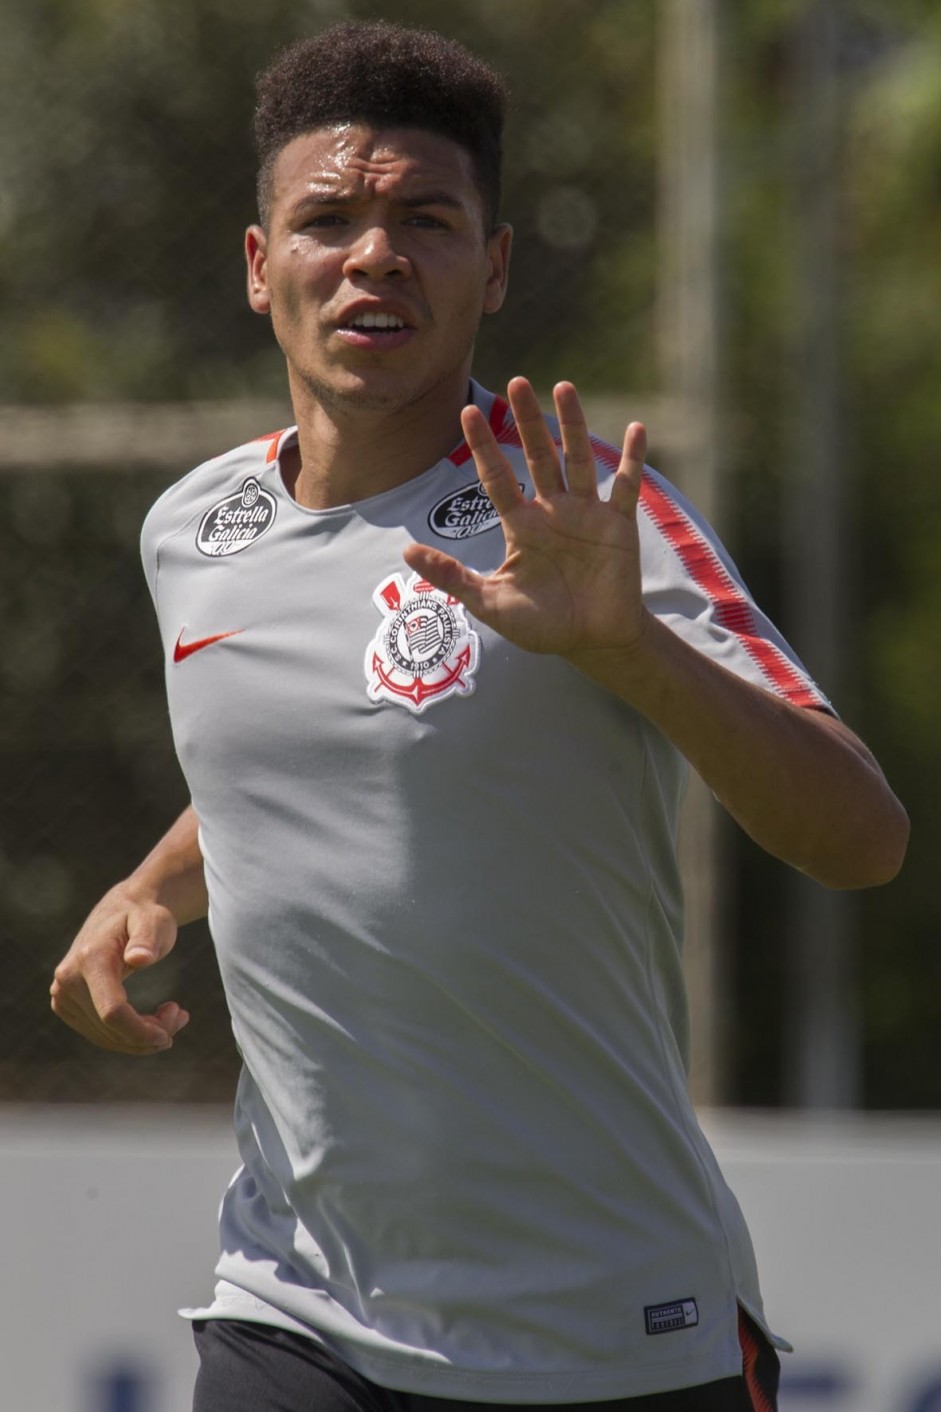 Voltando de leso, Marquinhos Gabriel apareceu no gramado pelo segundo dia consecutivo